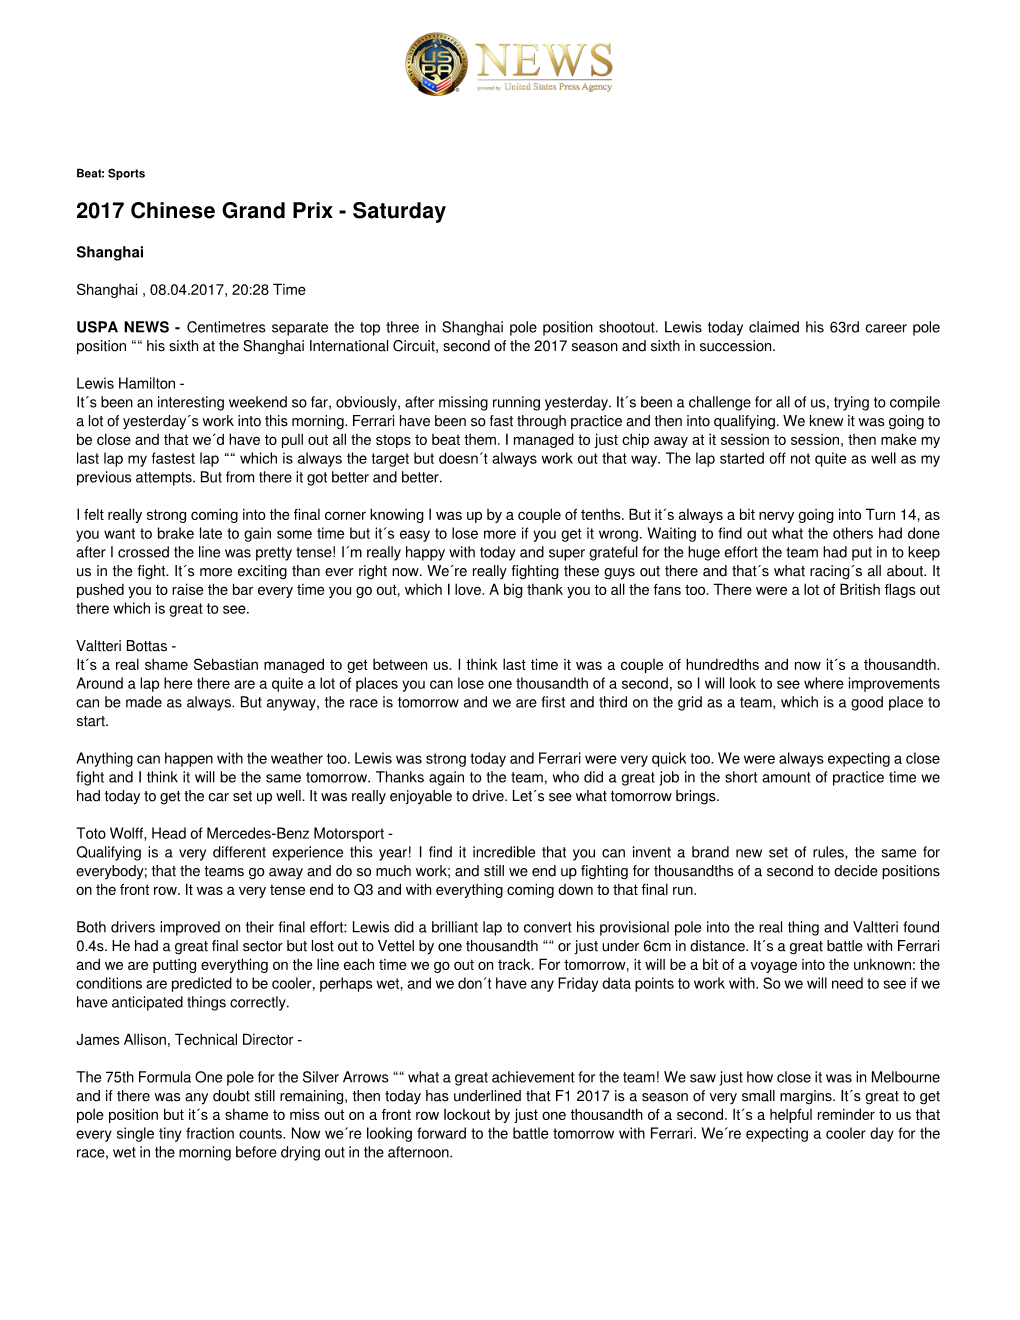 2017 Chinese Grand Prix - Saturday